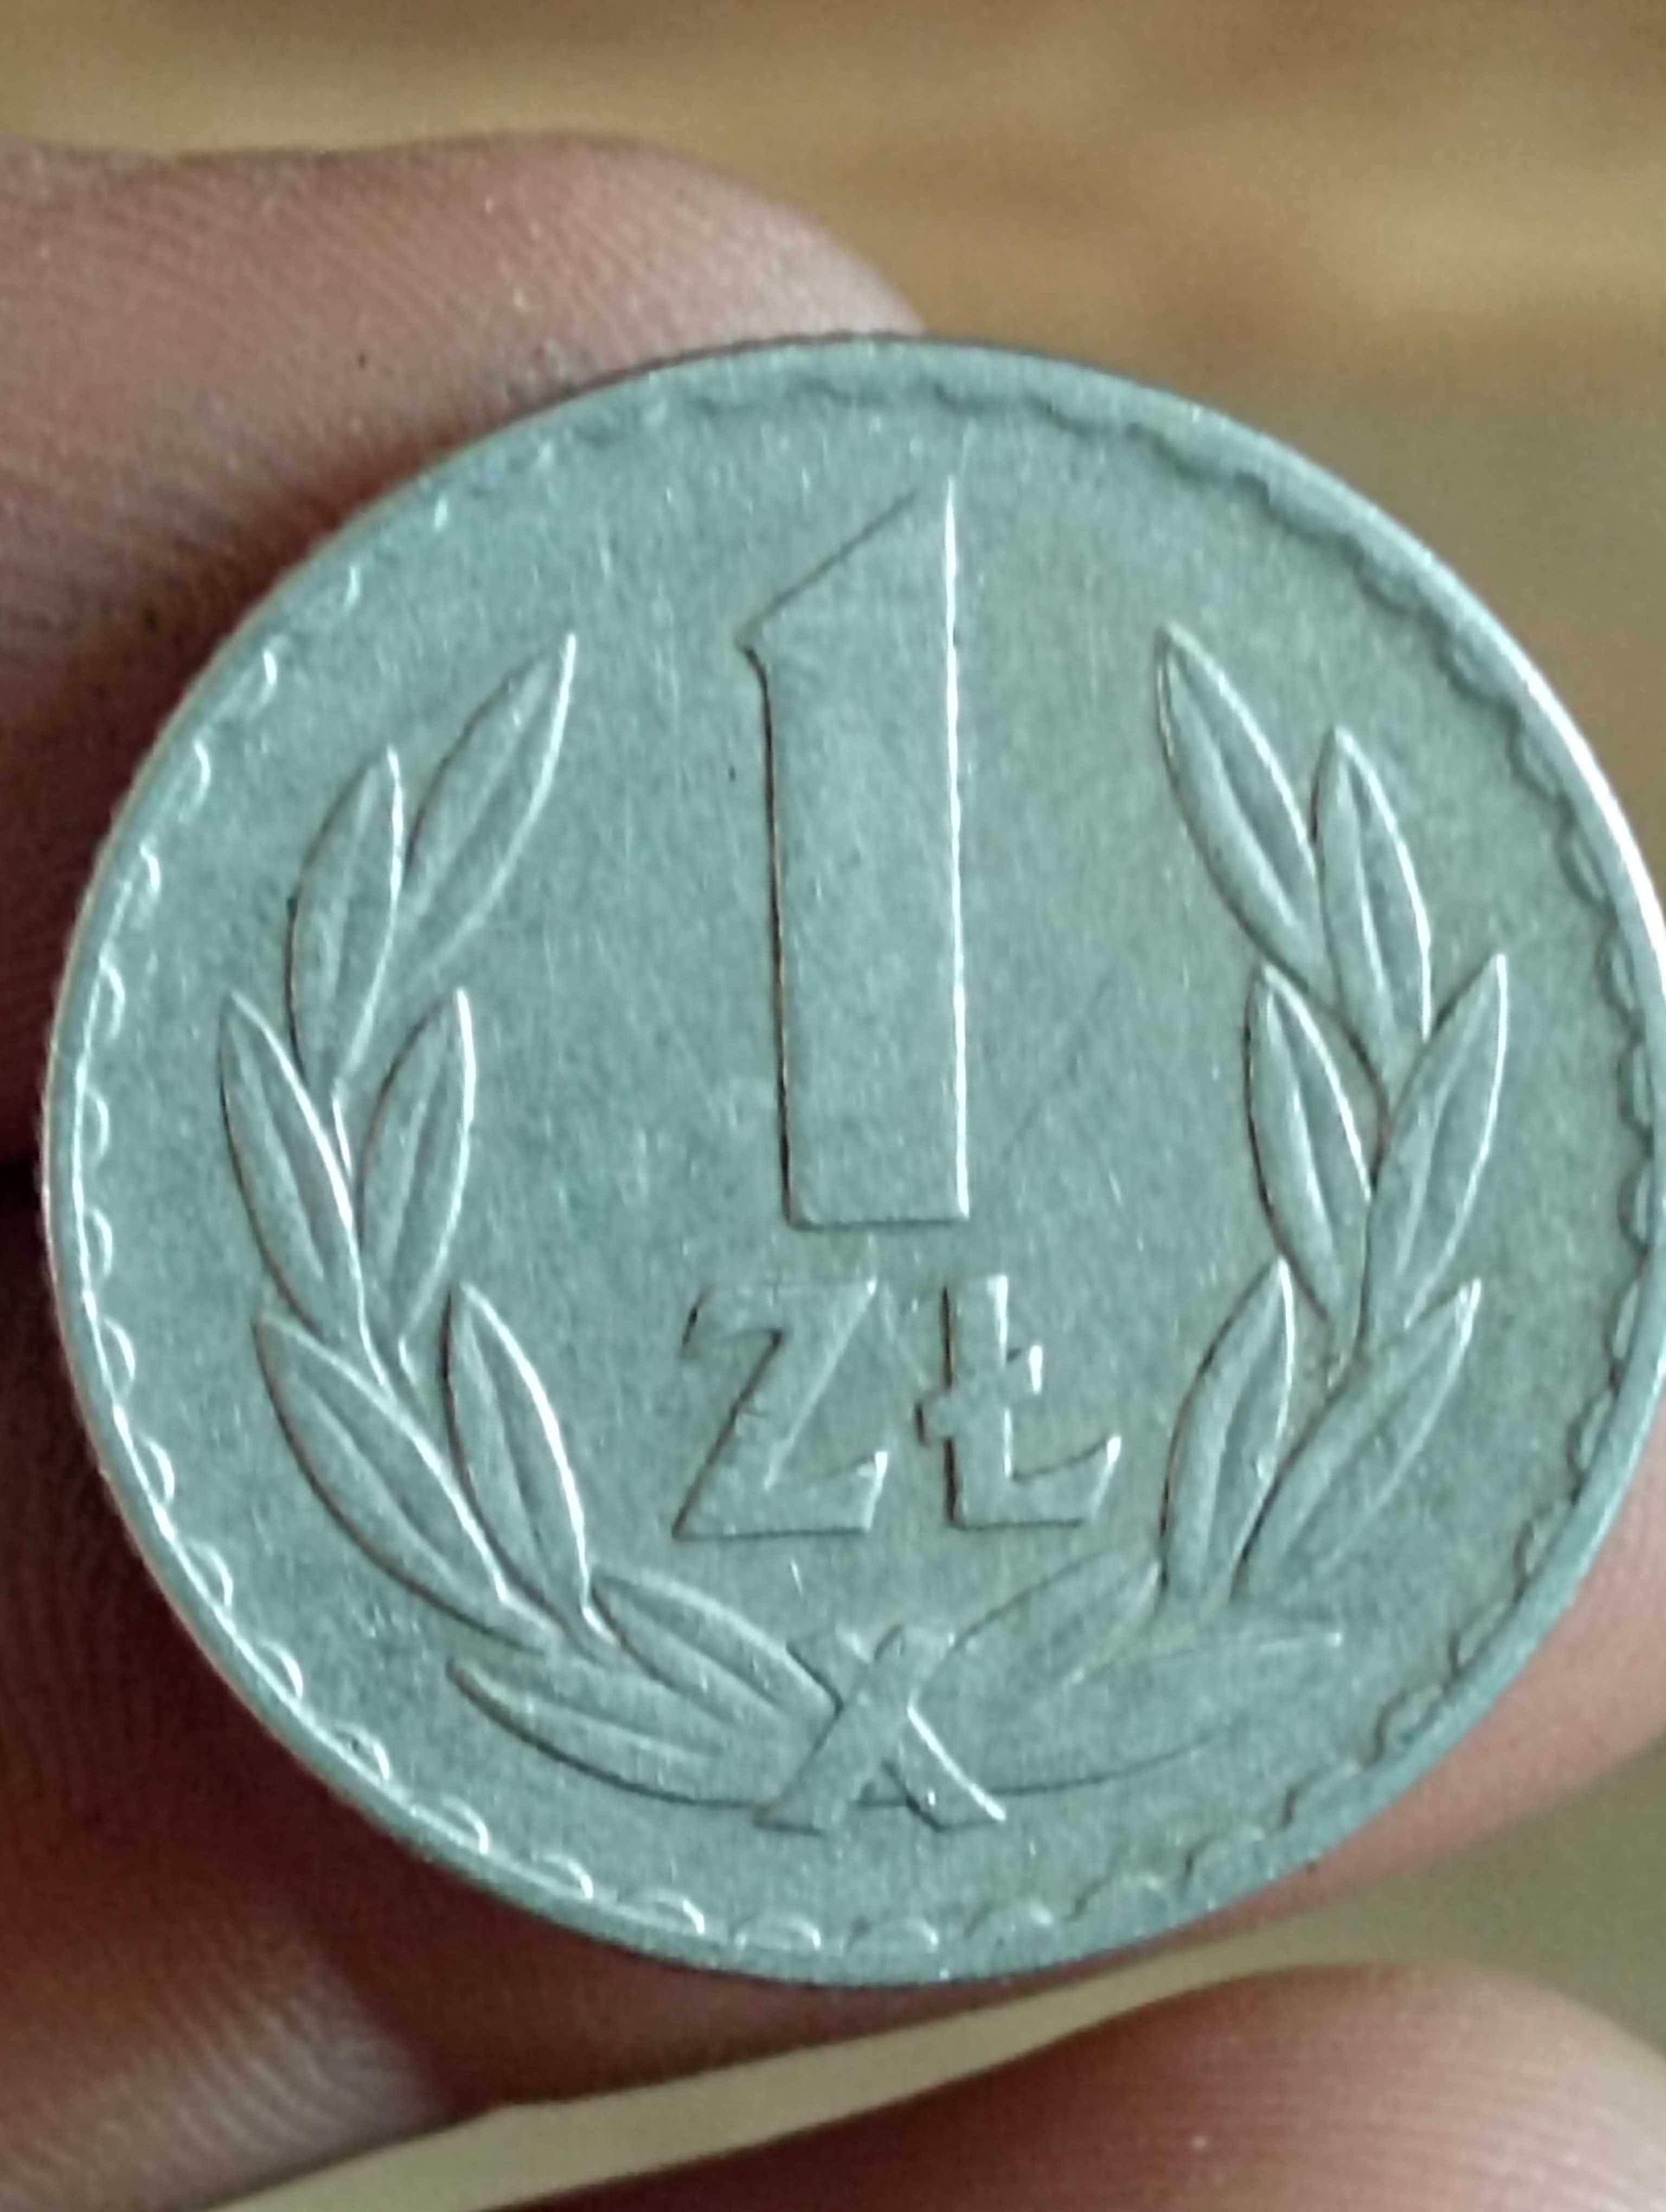 Sprzedam monete 1 zloty 1973r zzm